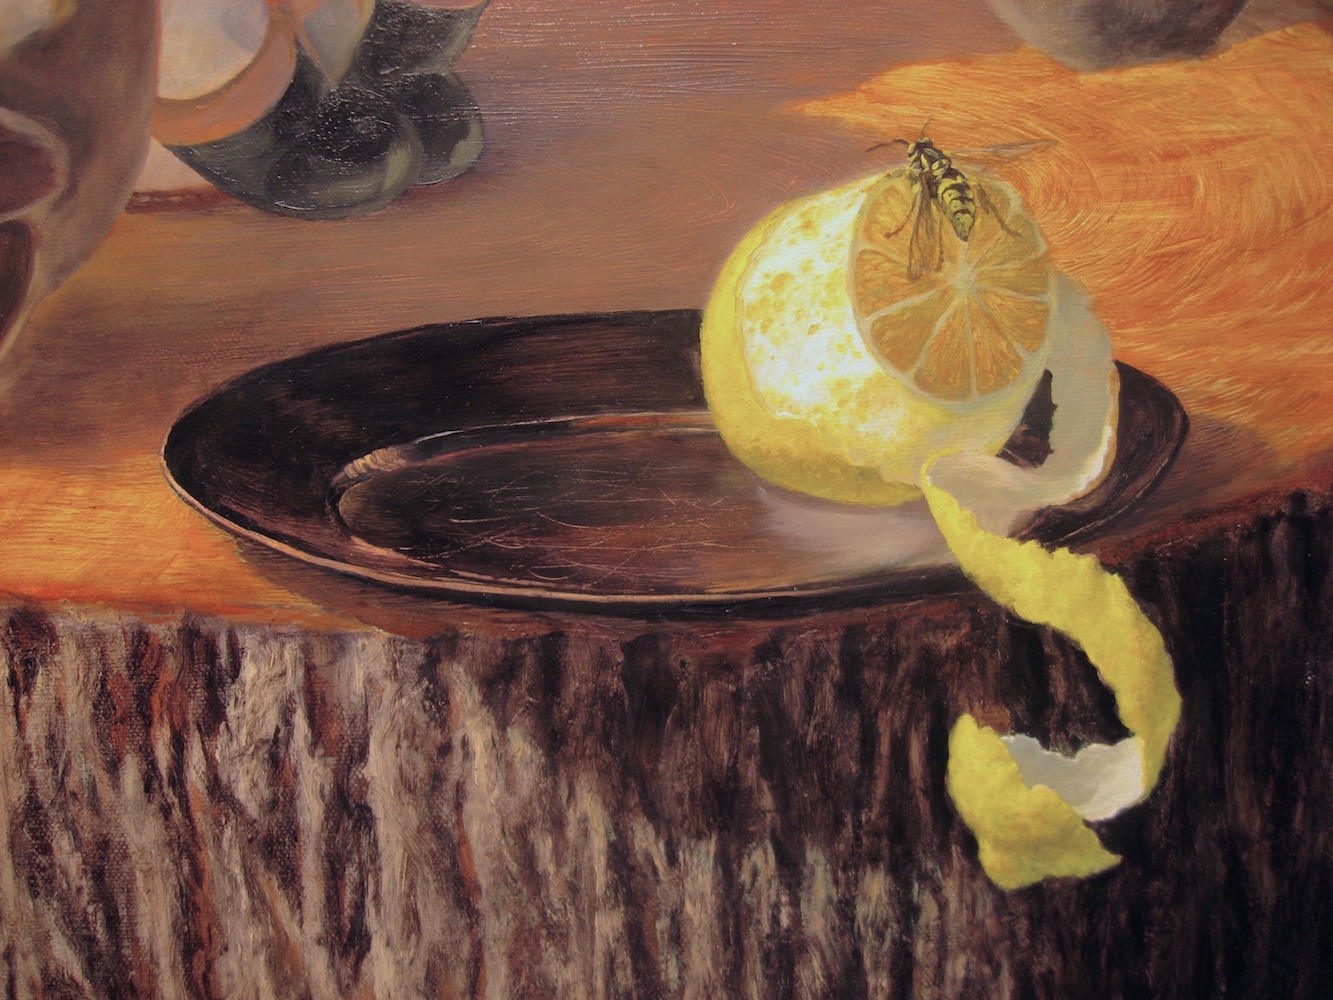 Wasps - detail, lemon